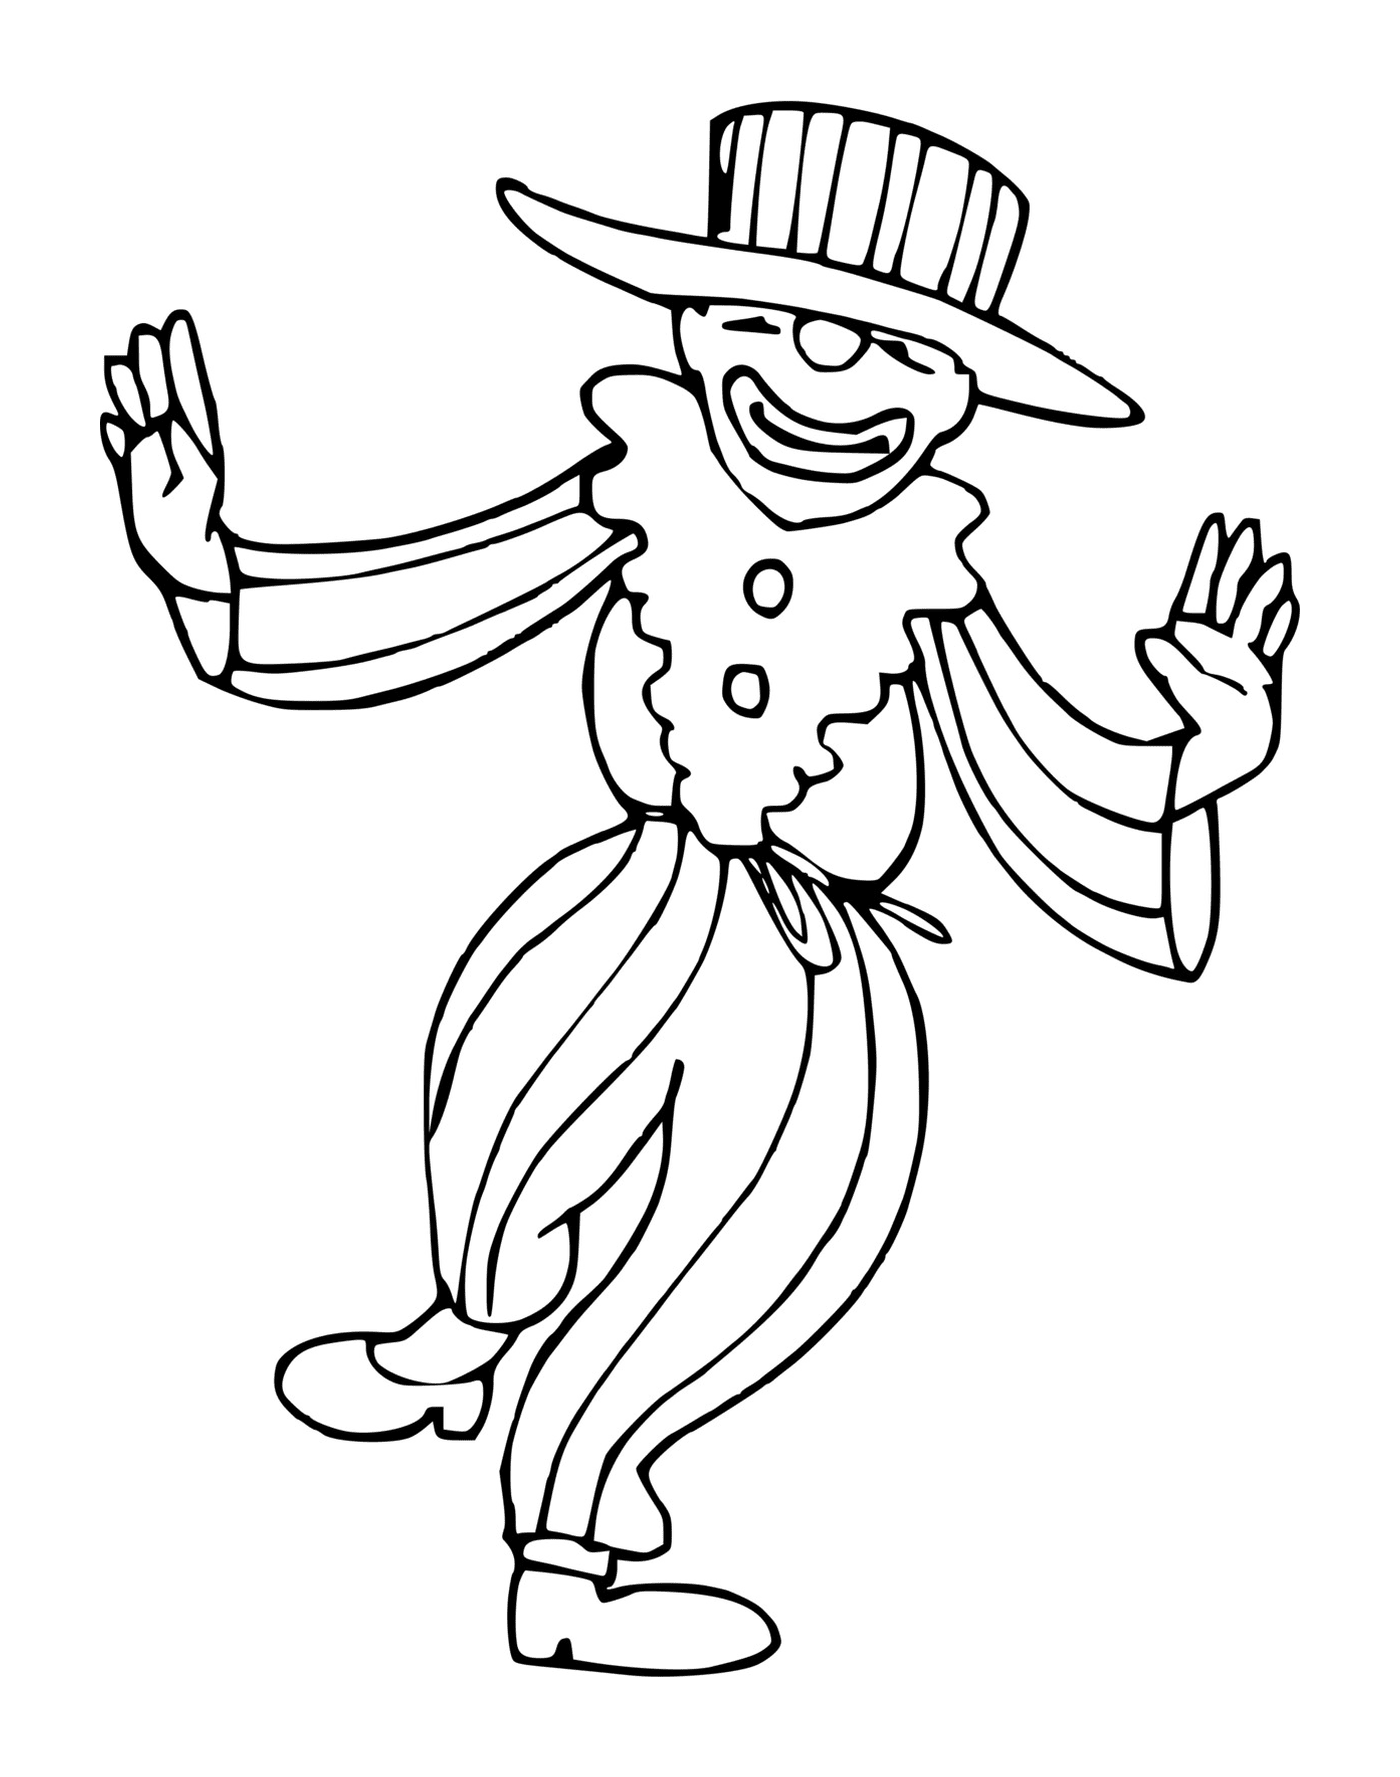  Clown trägt einen übergroßen Hut 